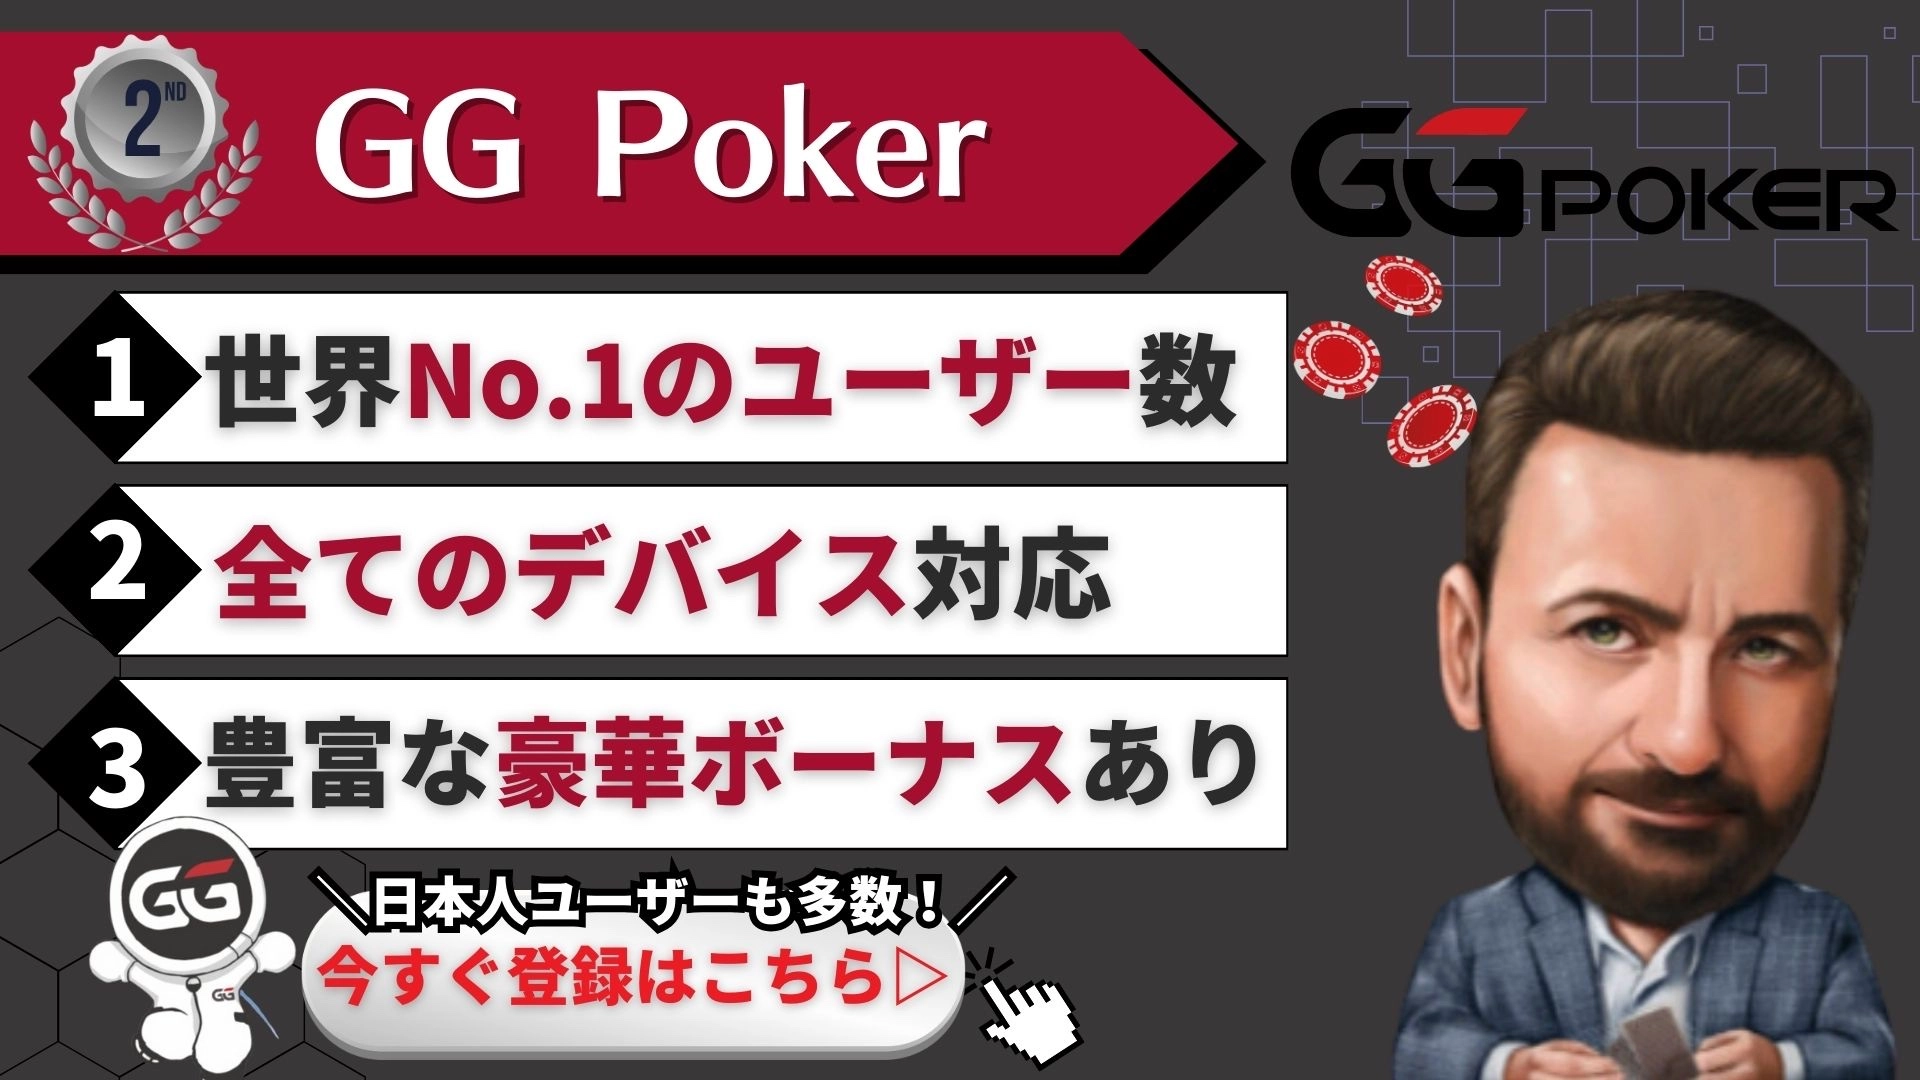 GG poker(GGポーカー)の特徴について説明した画像